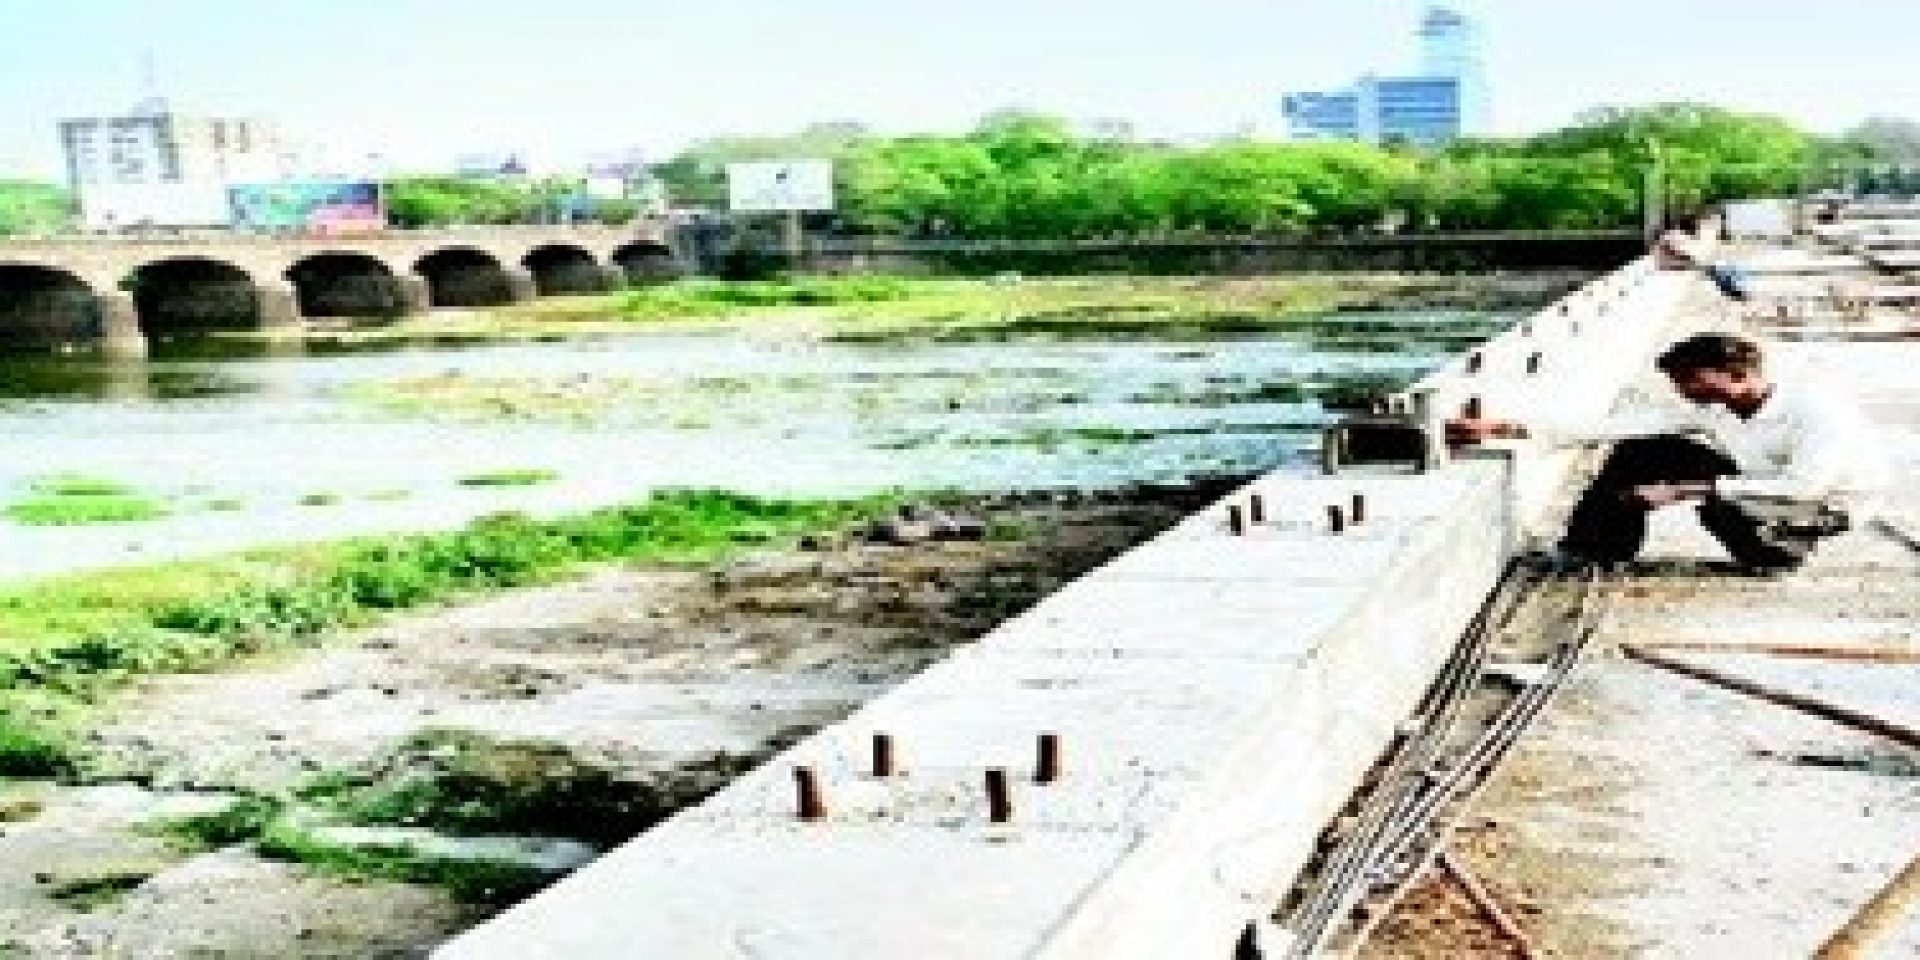 Hilti referencia bund garden híd Pune India